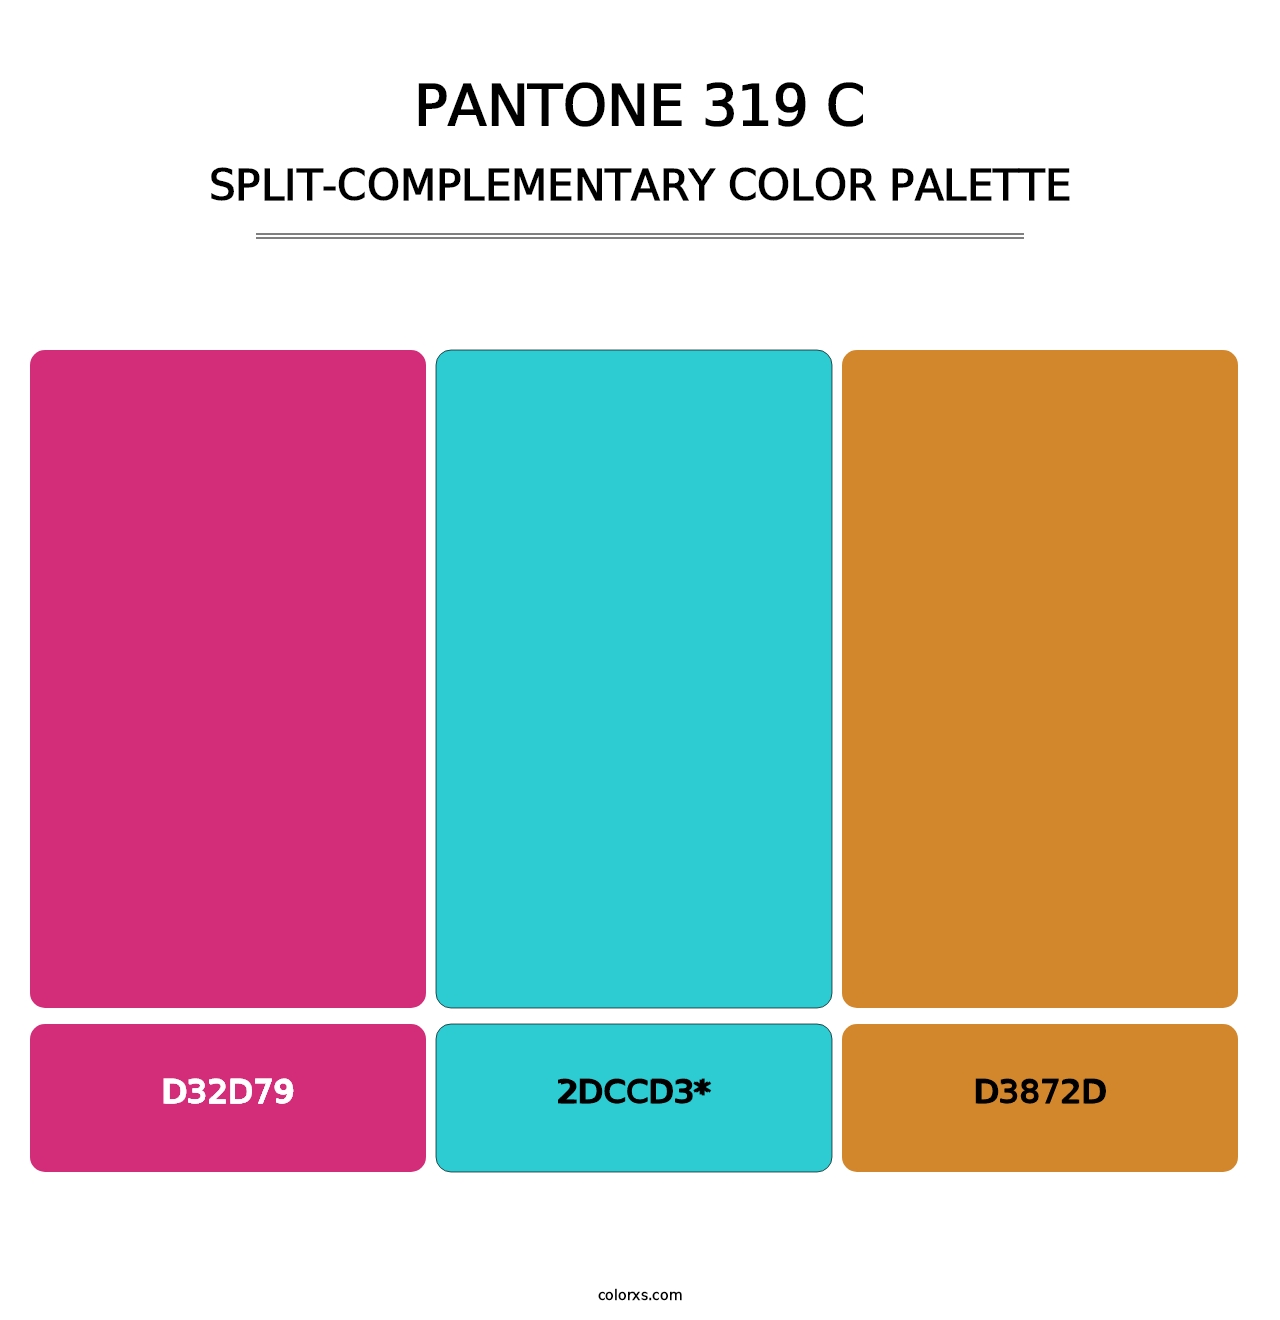 PANTONE 319 C - Split-Complementary Color Palette